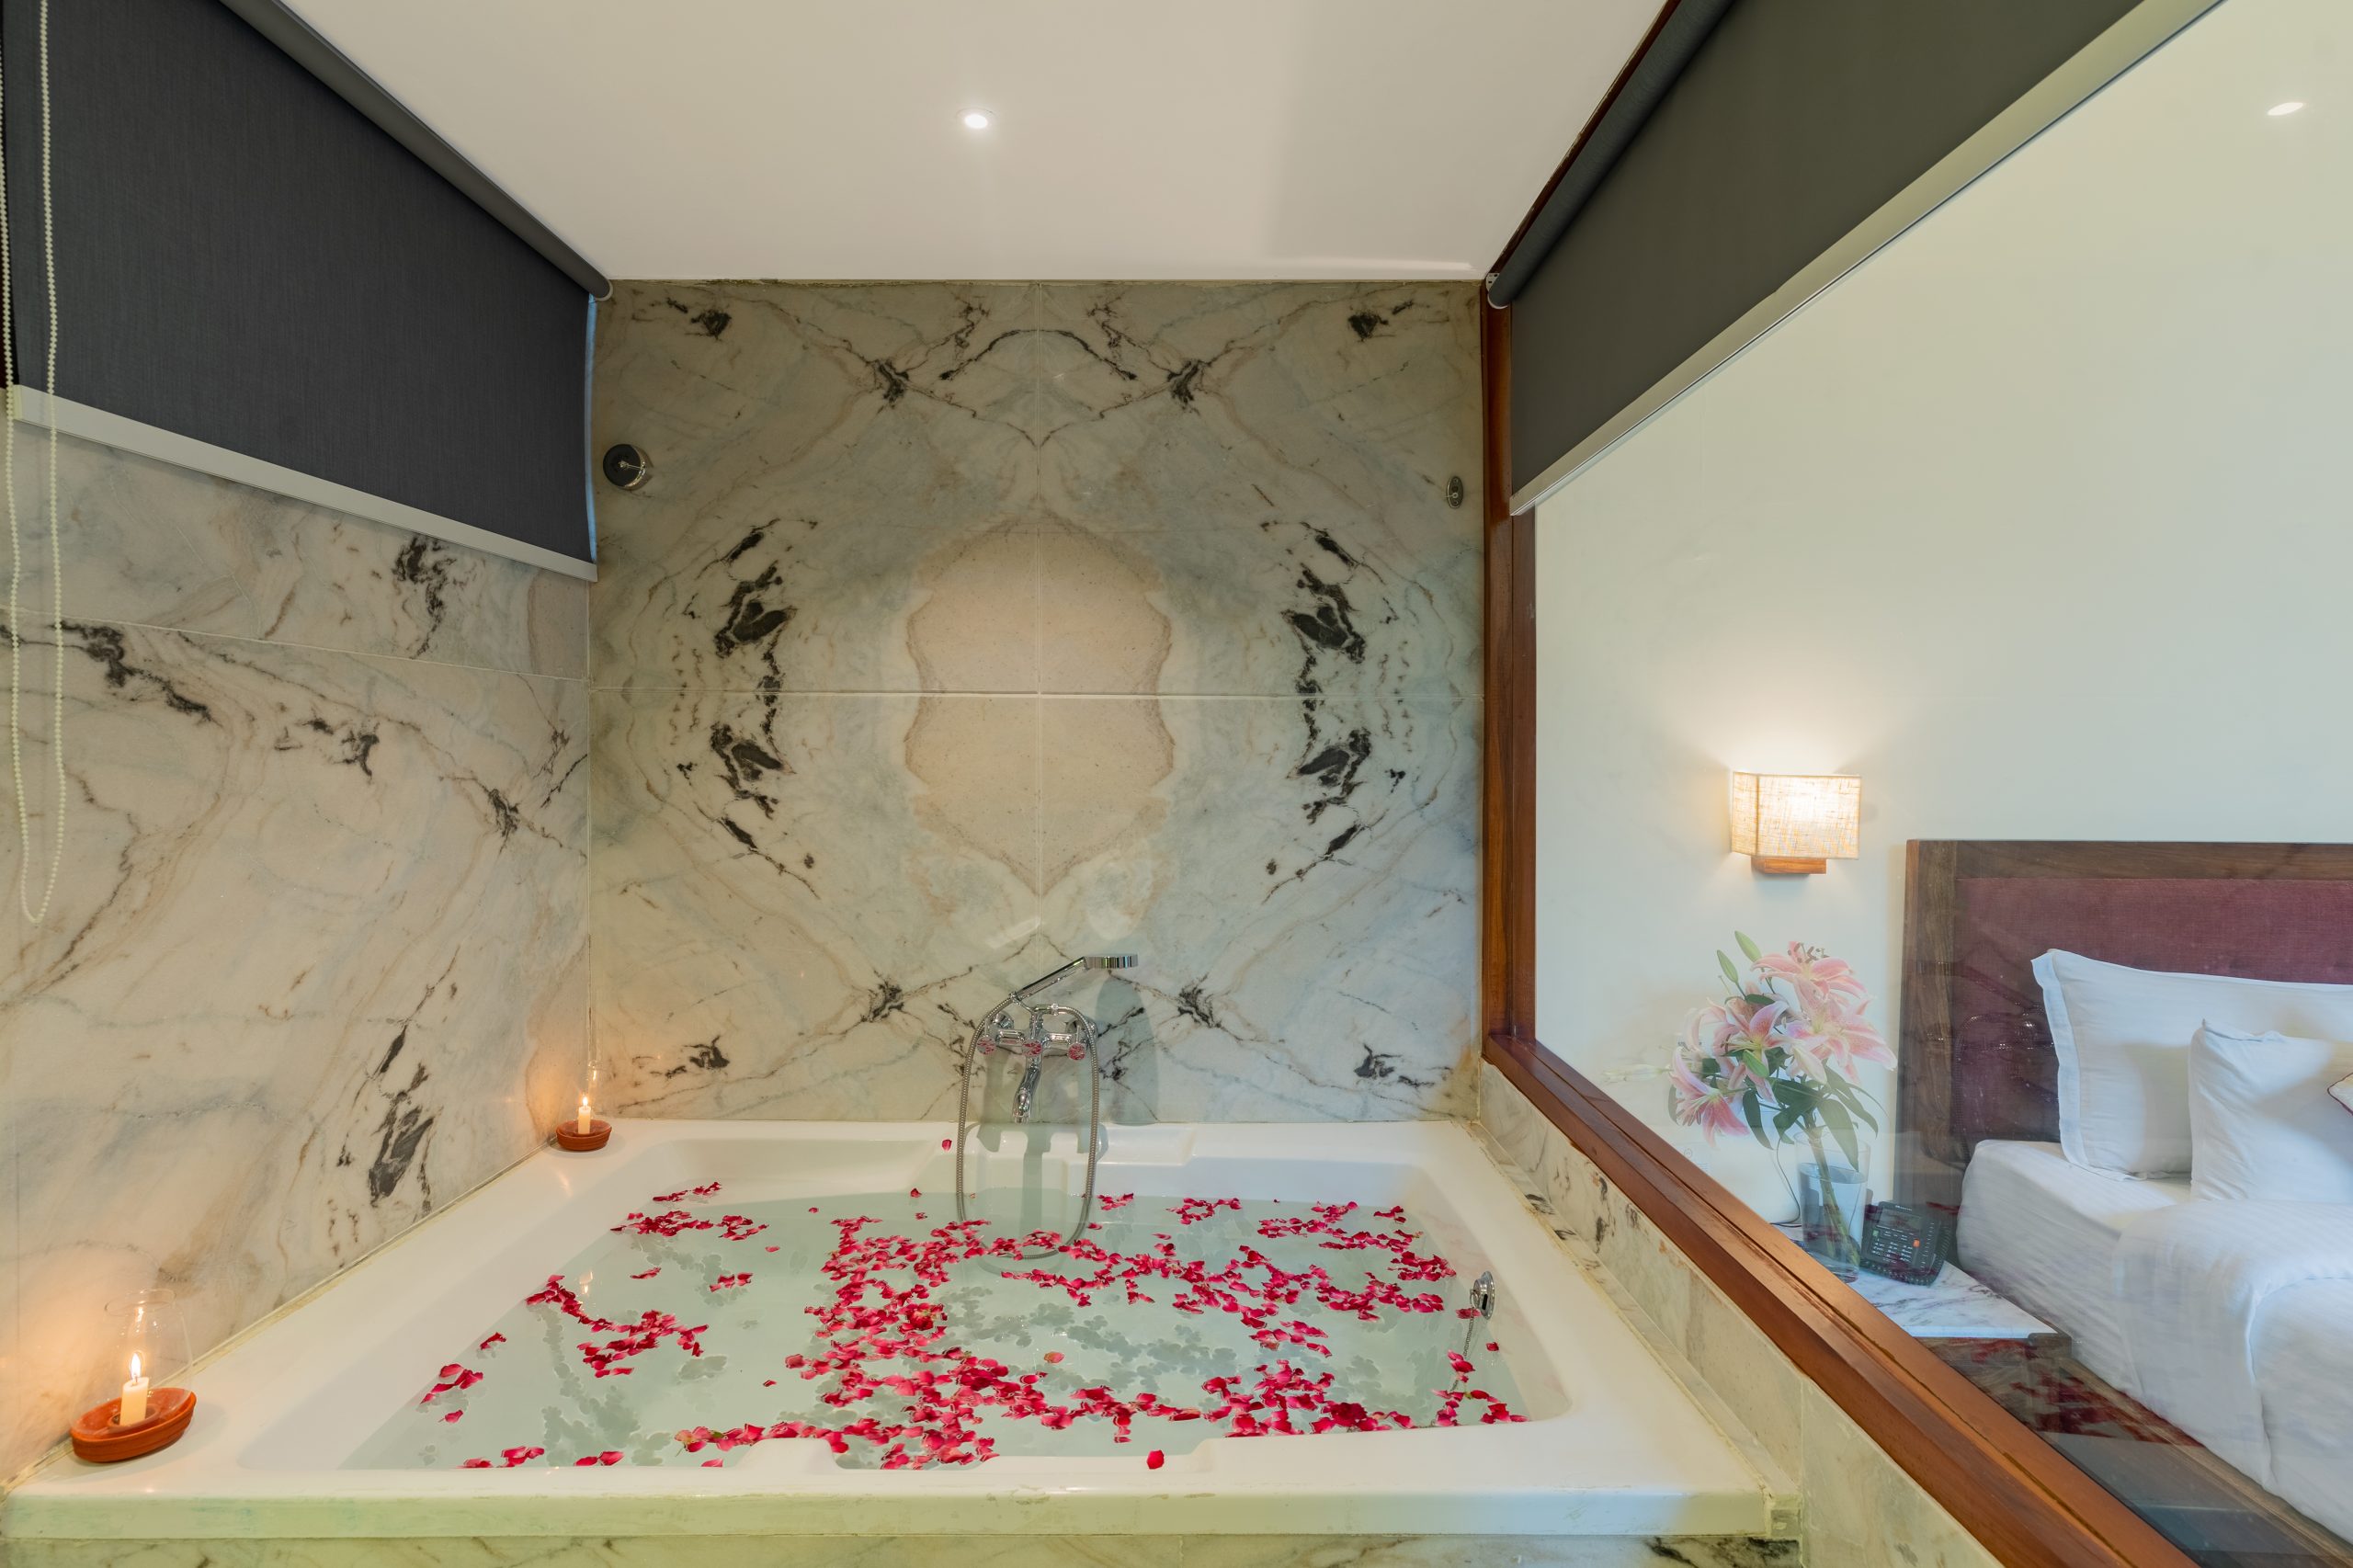 Luxury Villa with Bath Tub